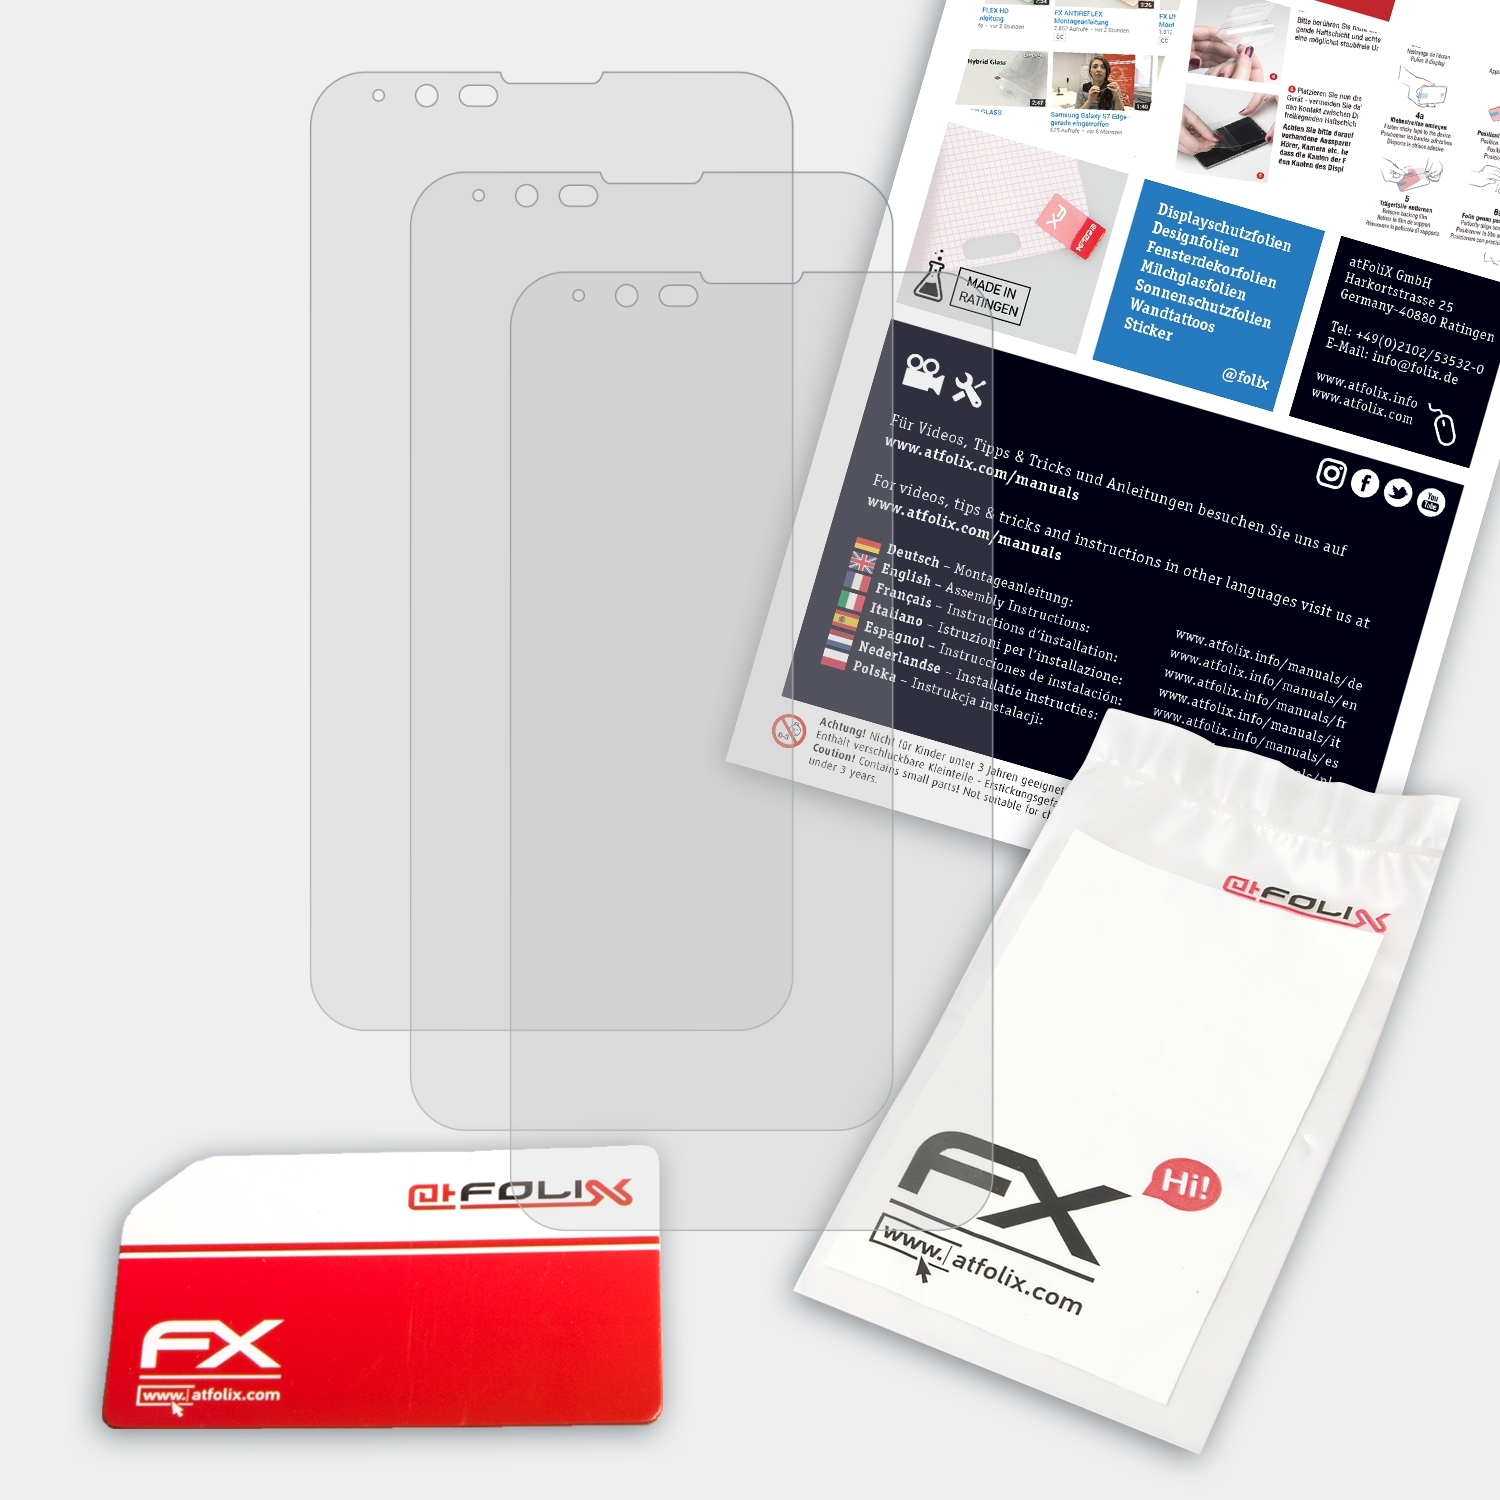 LG X fast) 3x FX-Antireflex ATFOLIX Displayschutz(für